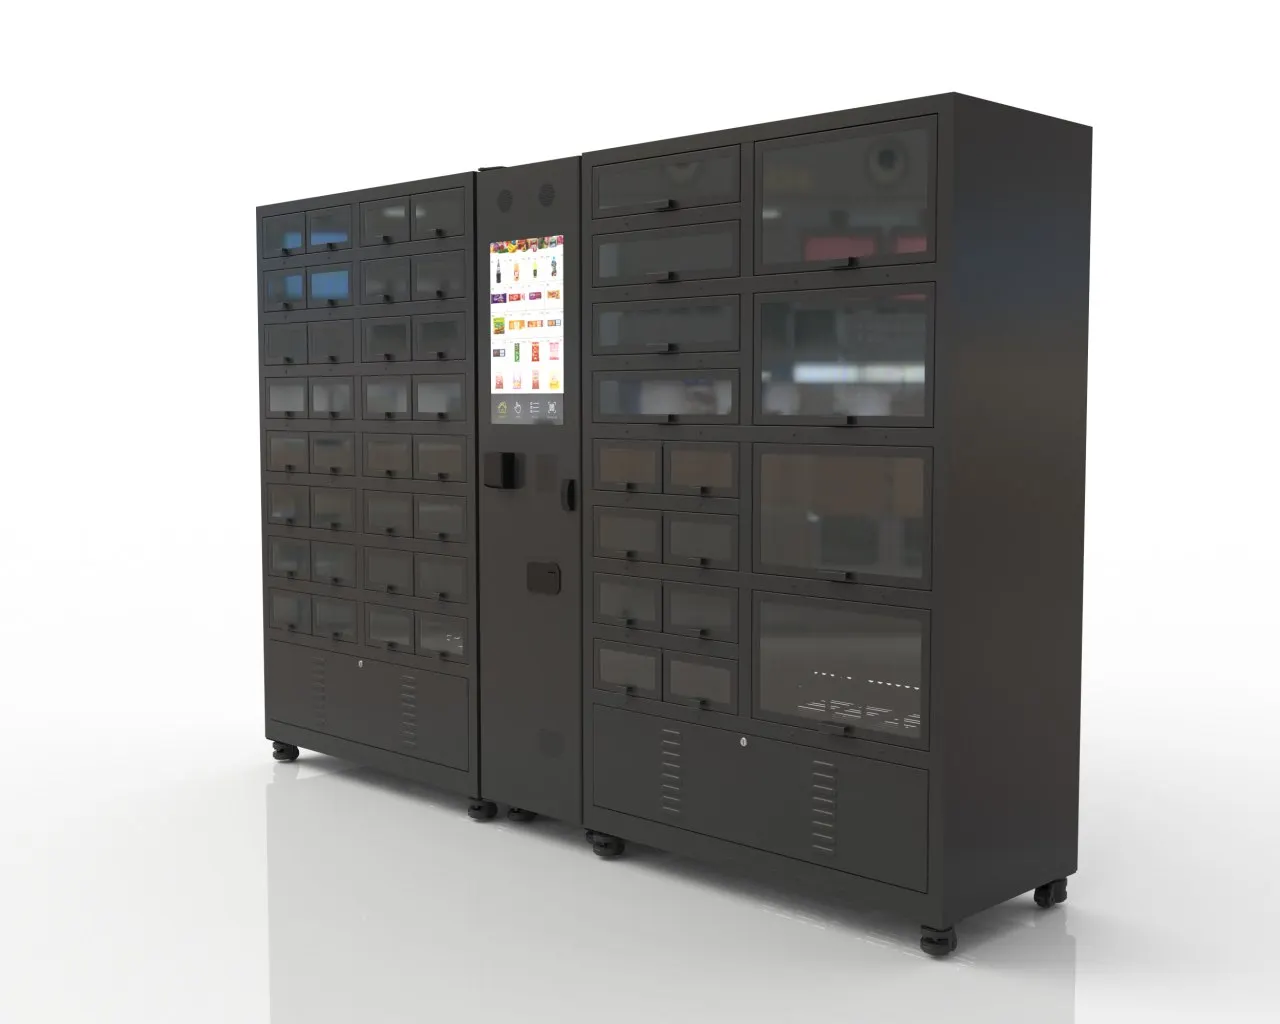 Haloo combo vending machines supplier outdoor-2